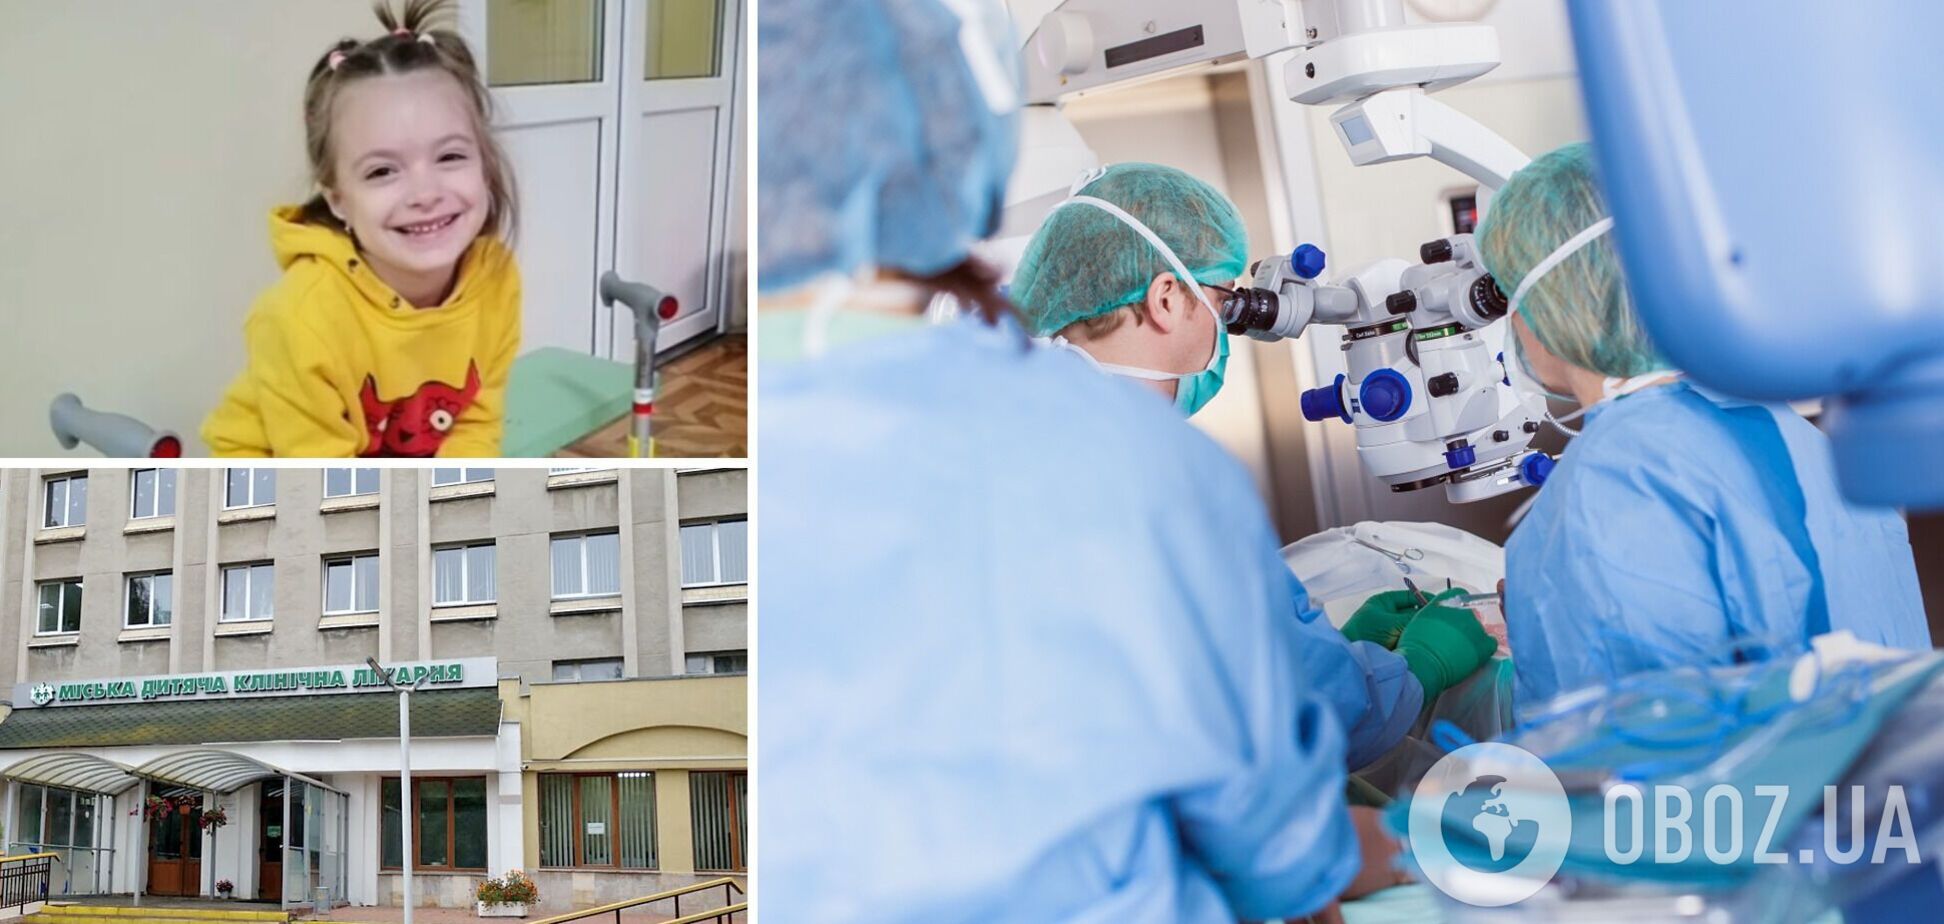 Во Львове врачи провели сложную операцию 5-летней девочке и подарили ей возможность ходить. Видео